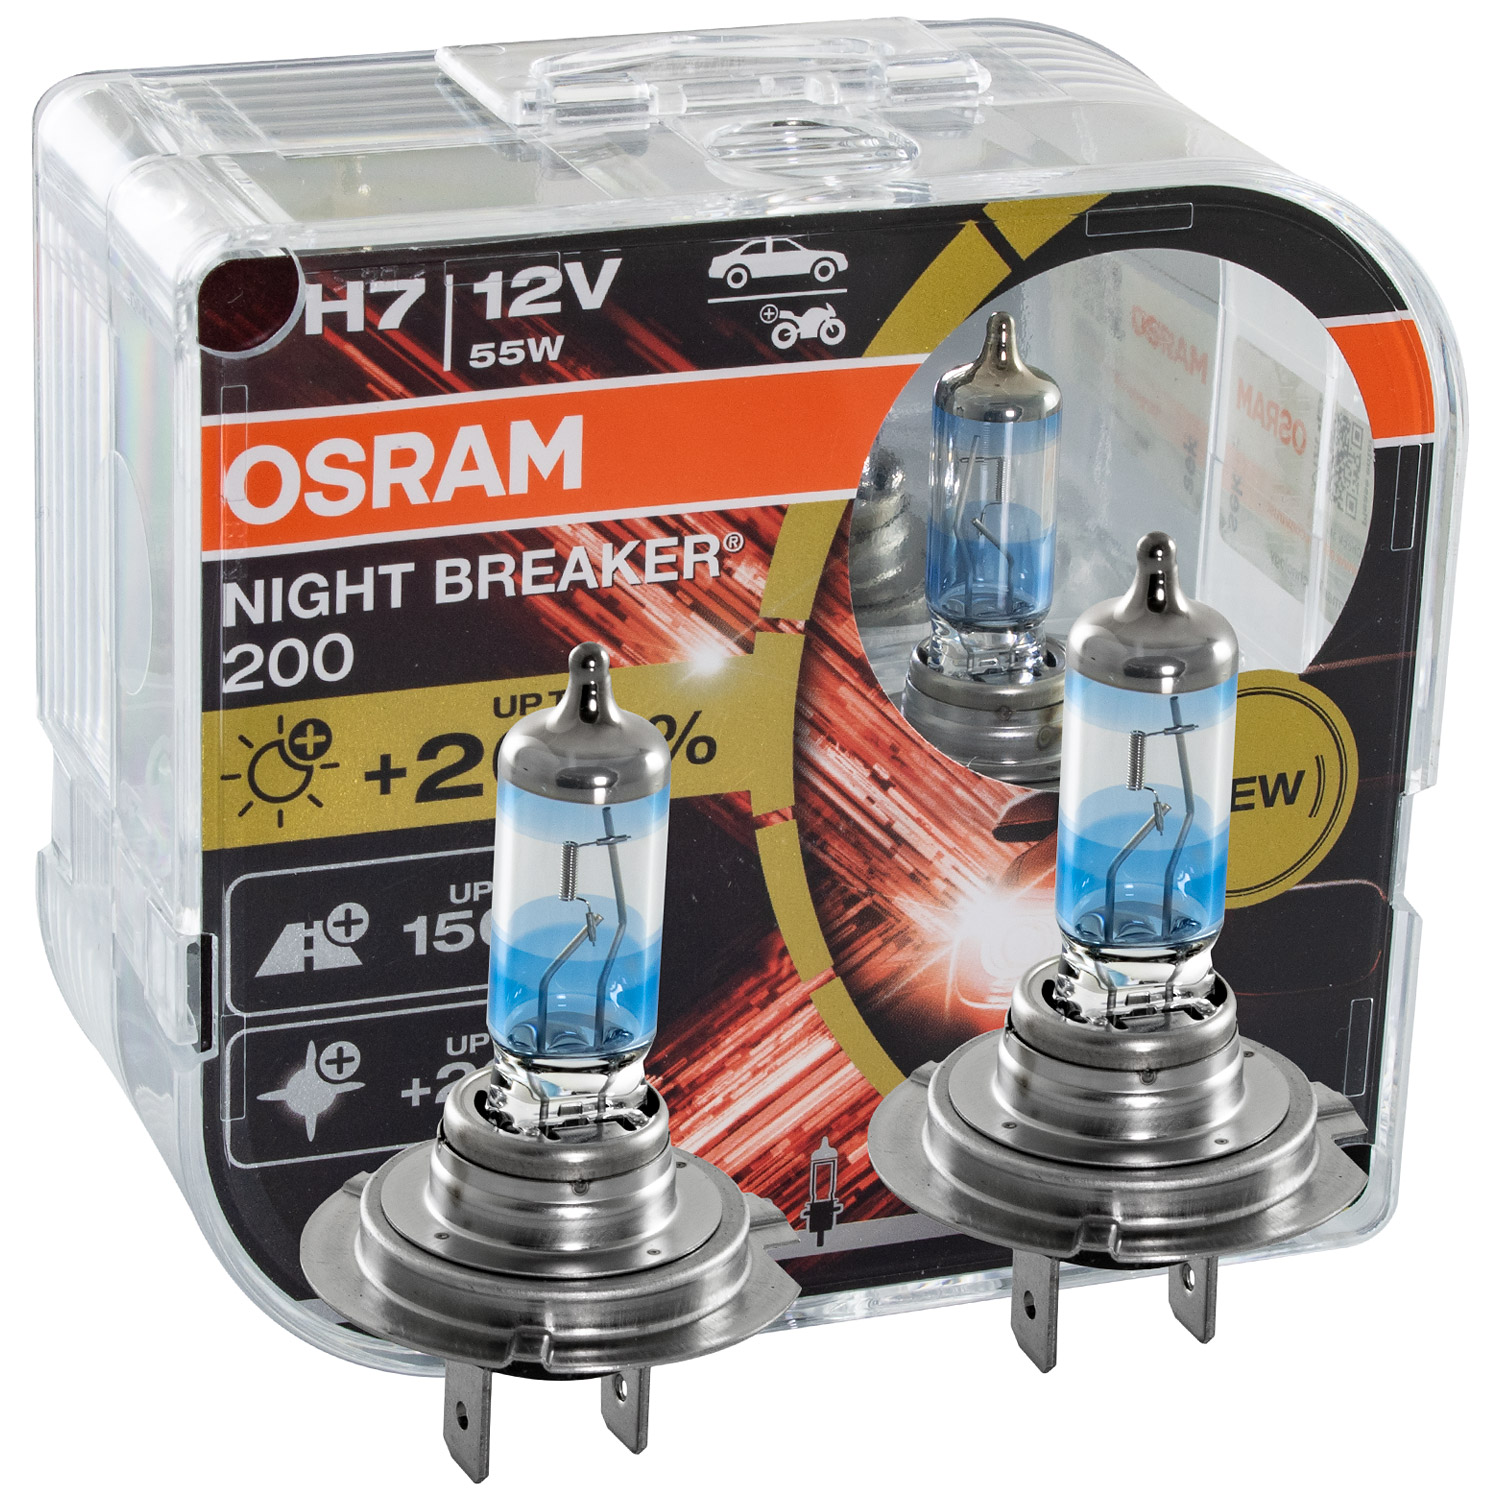 OSRAM H7 NIGHT BREAKER 200 DuoBox bis zu 200% mehr Licht NEXT GENERATION 12V 55W